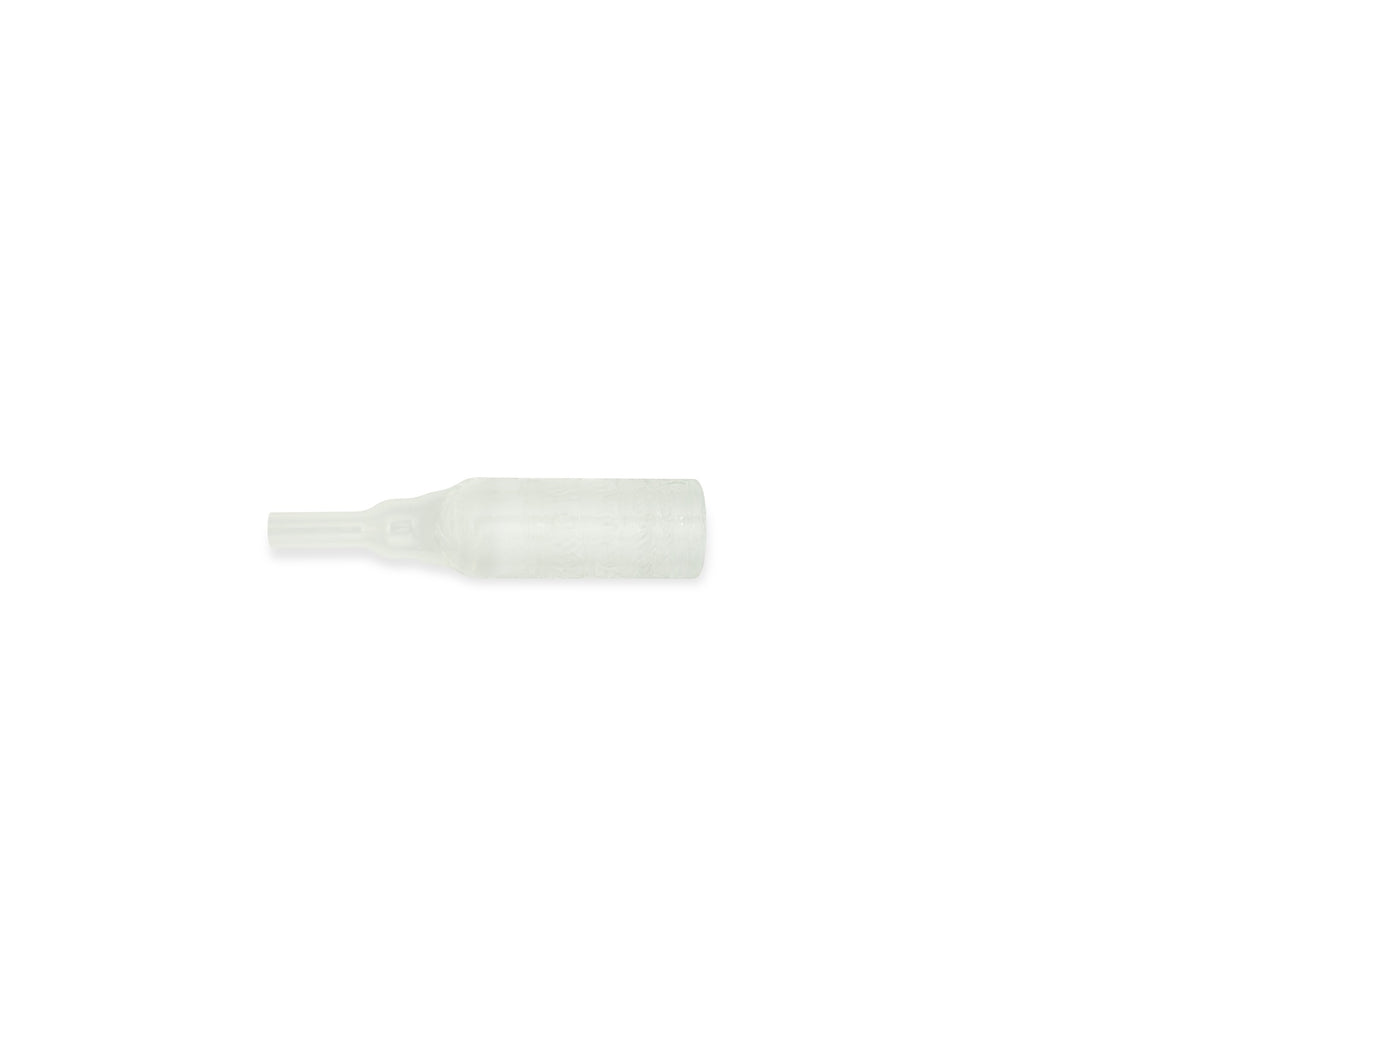 Hollister uridom inview std 32 mm 97232 (3Pcs)